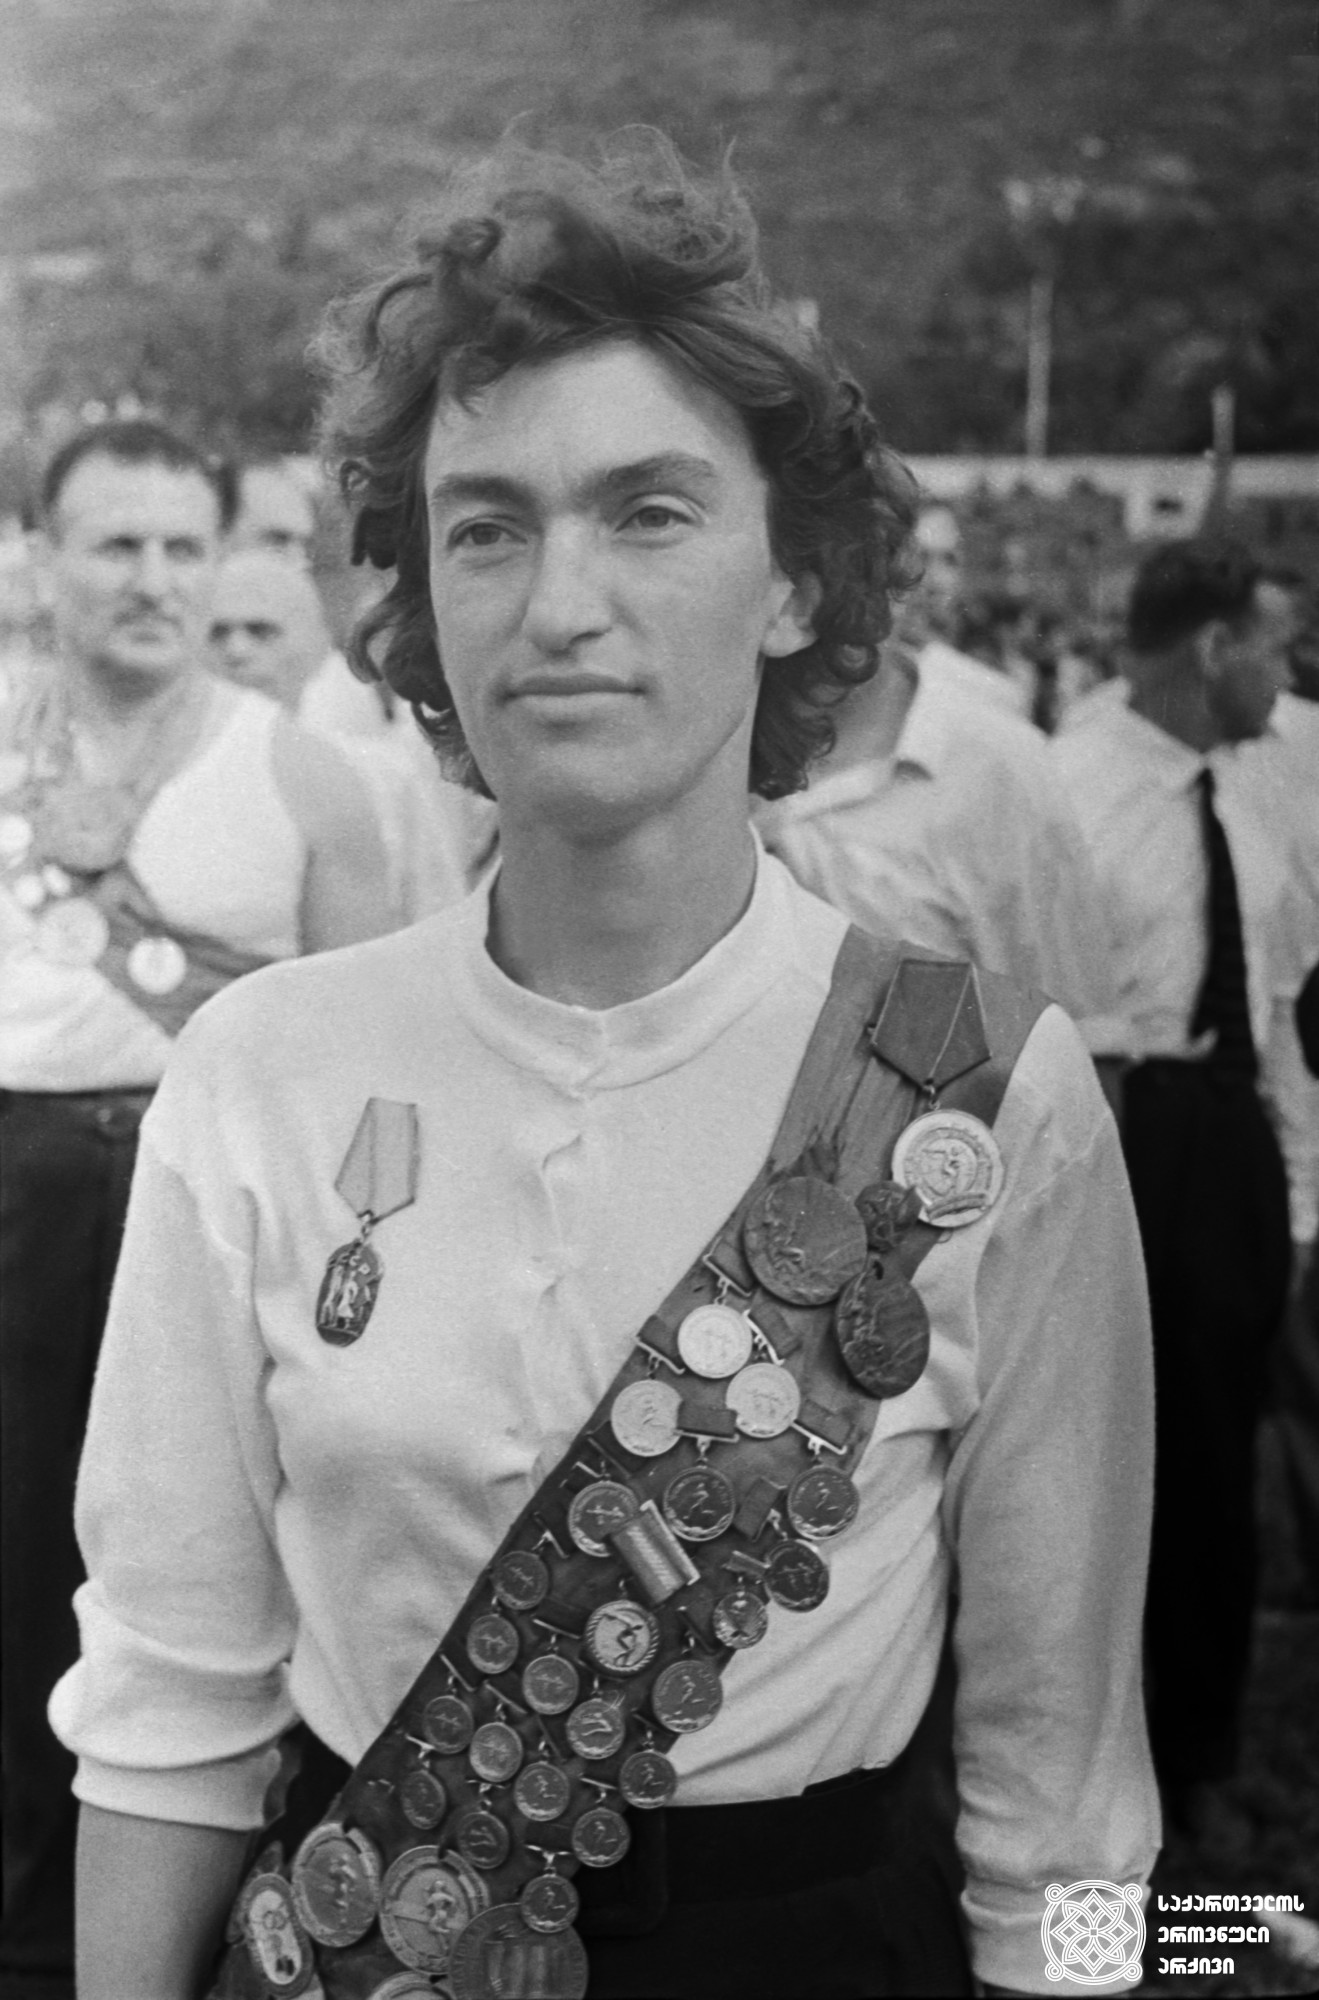 ნადეჟდა დვალიშვილი. <br>
XV და XVI ოლიმპიური თამაშების მესამე პრიზიორი მძლეოსნობაში (1952 წელი, ჰელსინკი; 1956 წელი, მელბურნი). <br>
Nadezhda Dvalishvili. <br>
Third-prize winner of the XV and XVI Olympic Games in Triathlon (1952, Helsinki; 1956, Melbourne).